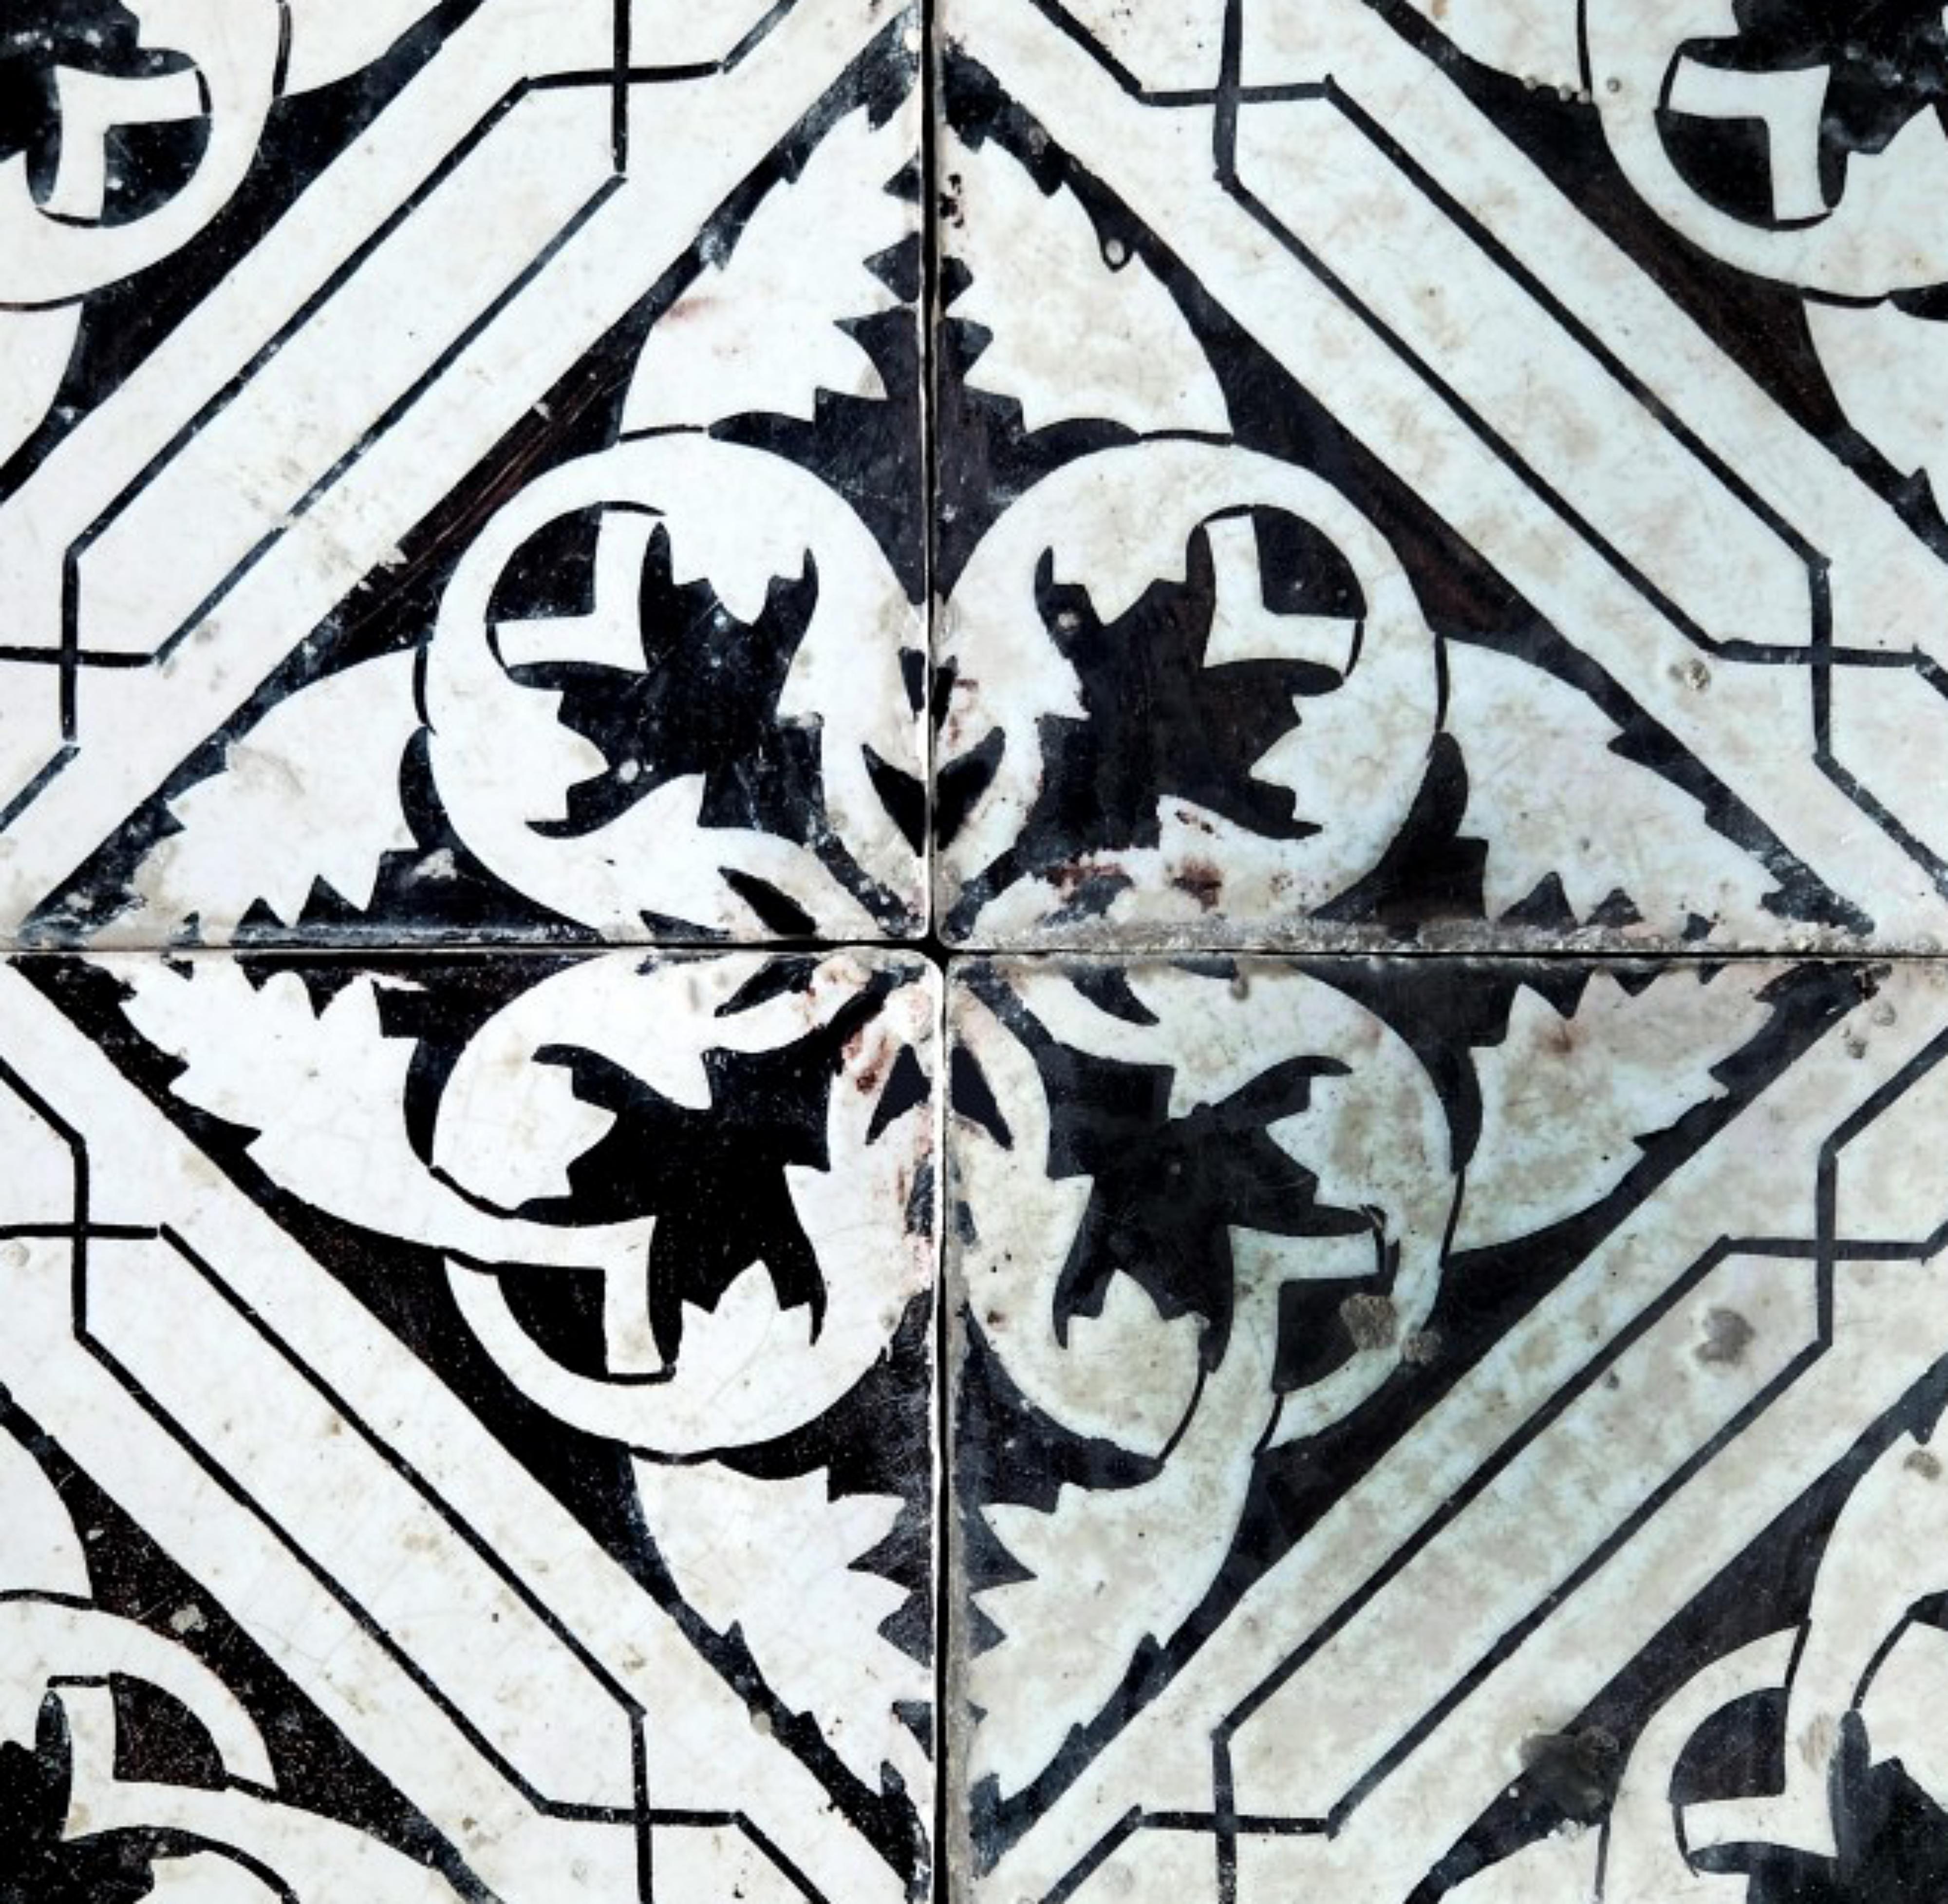 4 ( Vier ) Neapolitanische MAJOLICA KACHEL aus dem 19. Jahrhundert

4 Kacheln mit weißem Aluminiumoxid-Hintergrund mit geometrischen Mangan-Motiven.

VERFÜGBARKEIT VON 230 FLIESEN

HÖHE 40 cm
BREITE 40 cm
DICKTHEIT 1,7 cm
GEWICHT 1,3